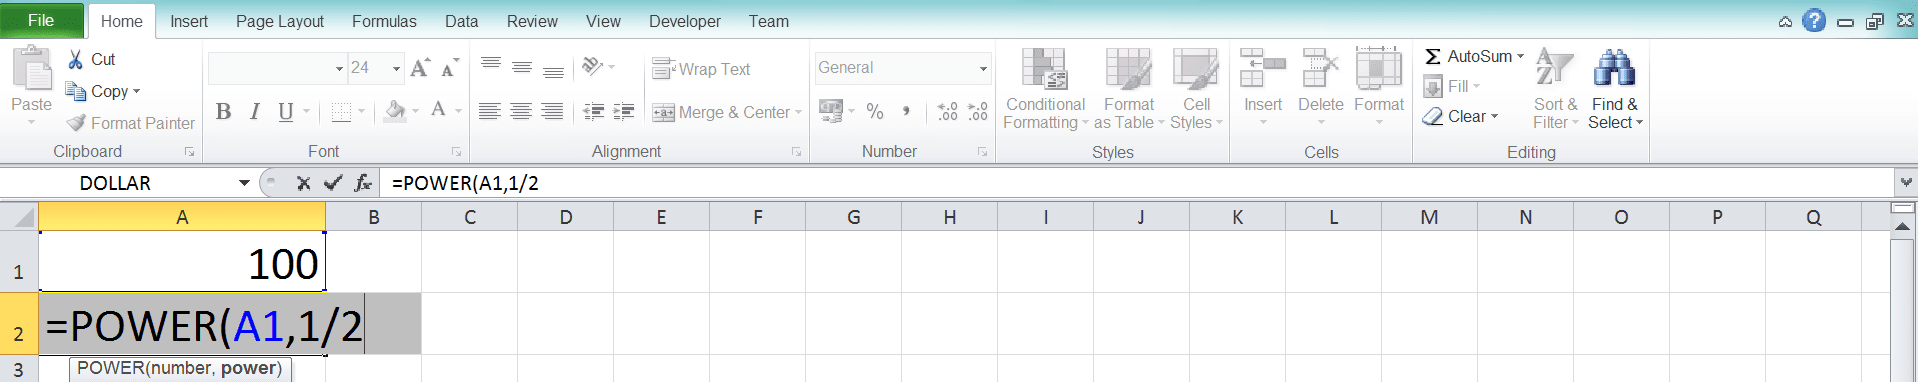 Cara Menghitung Akar di Excel Beserta Berbagai Rumus dan Fungsinya - Screenshot Langkah 2-5